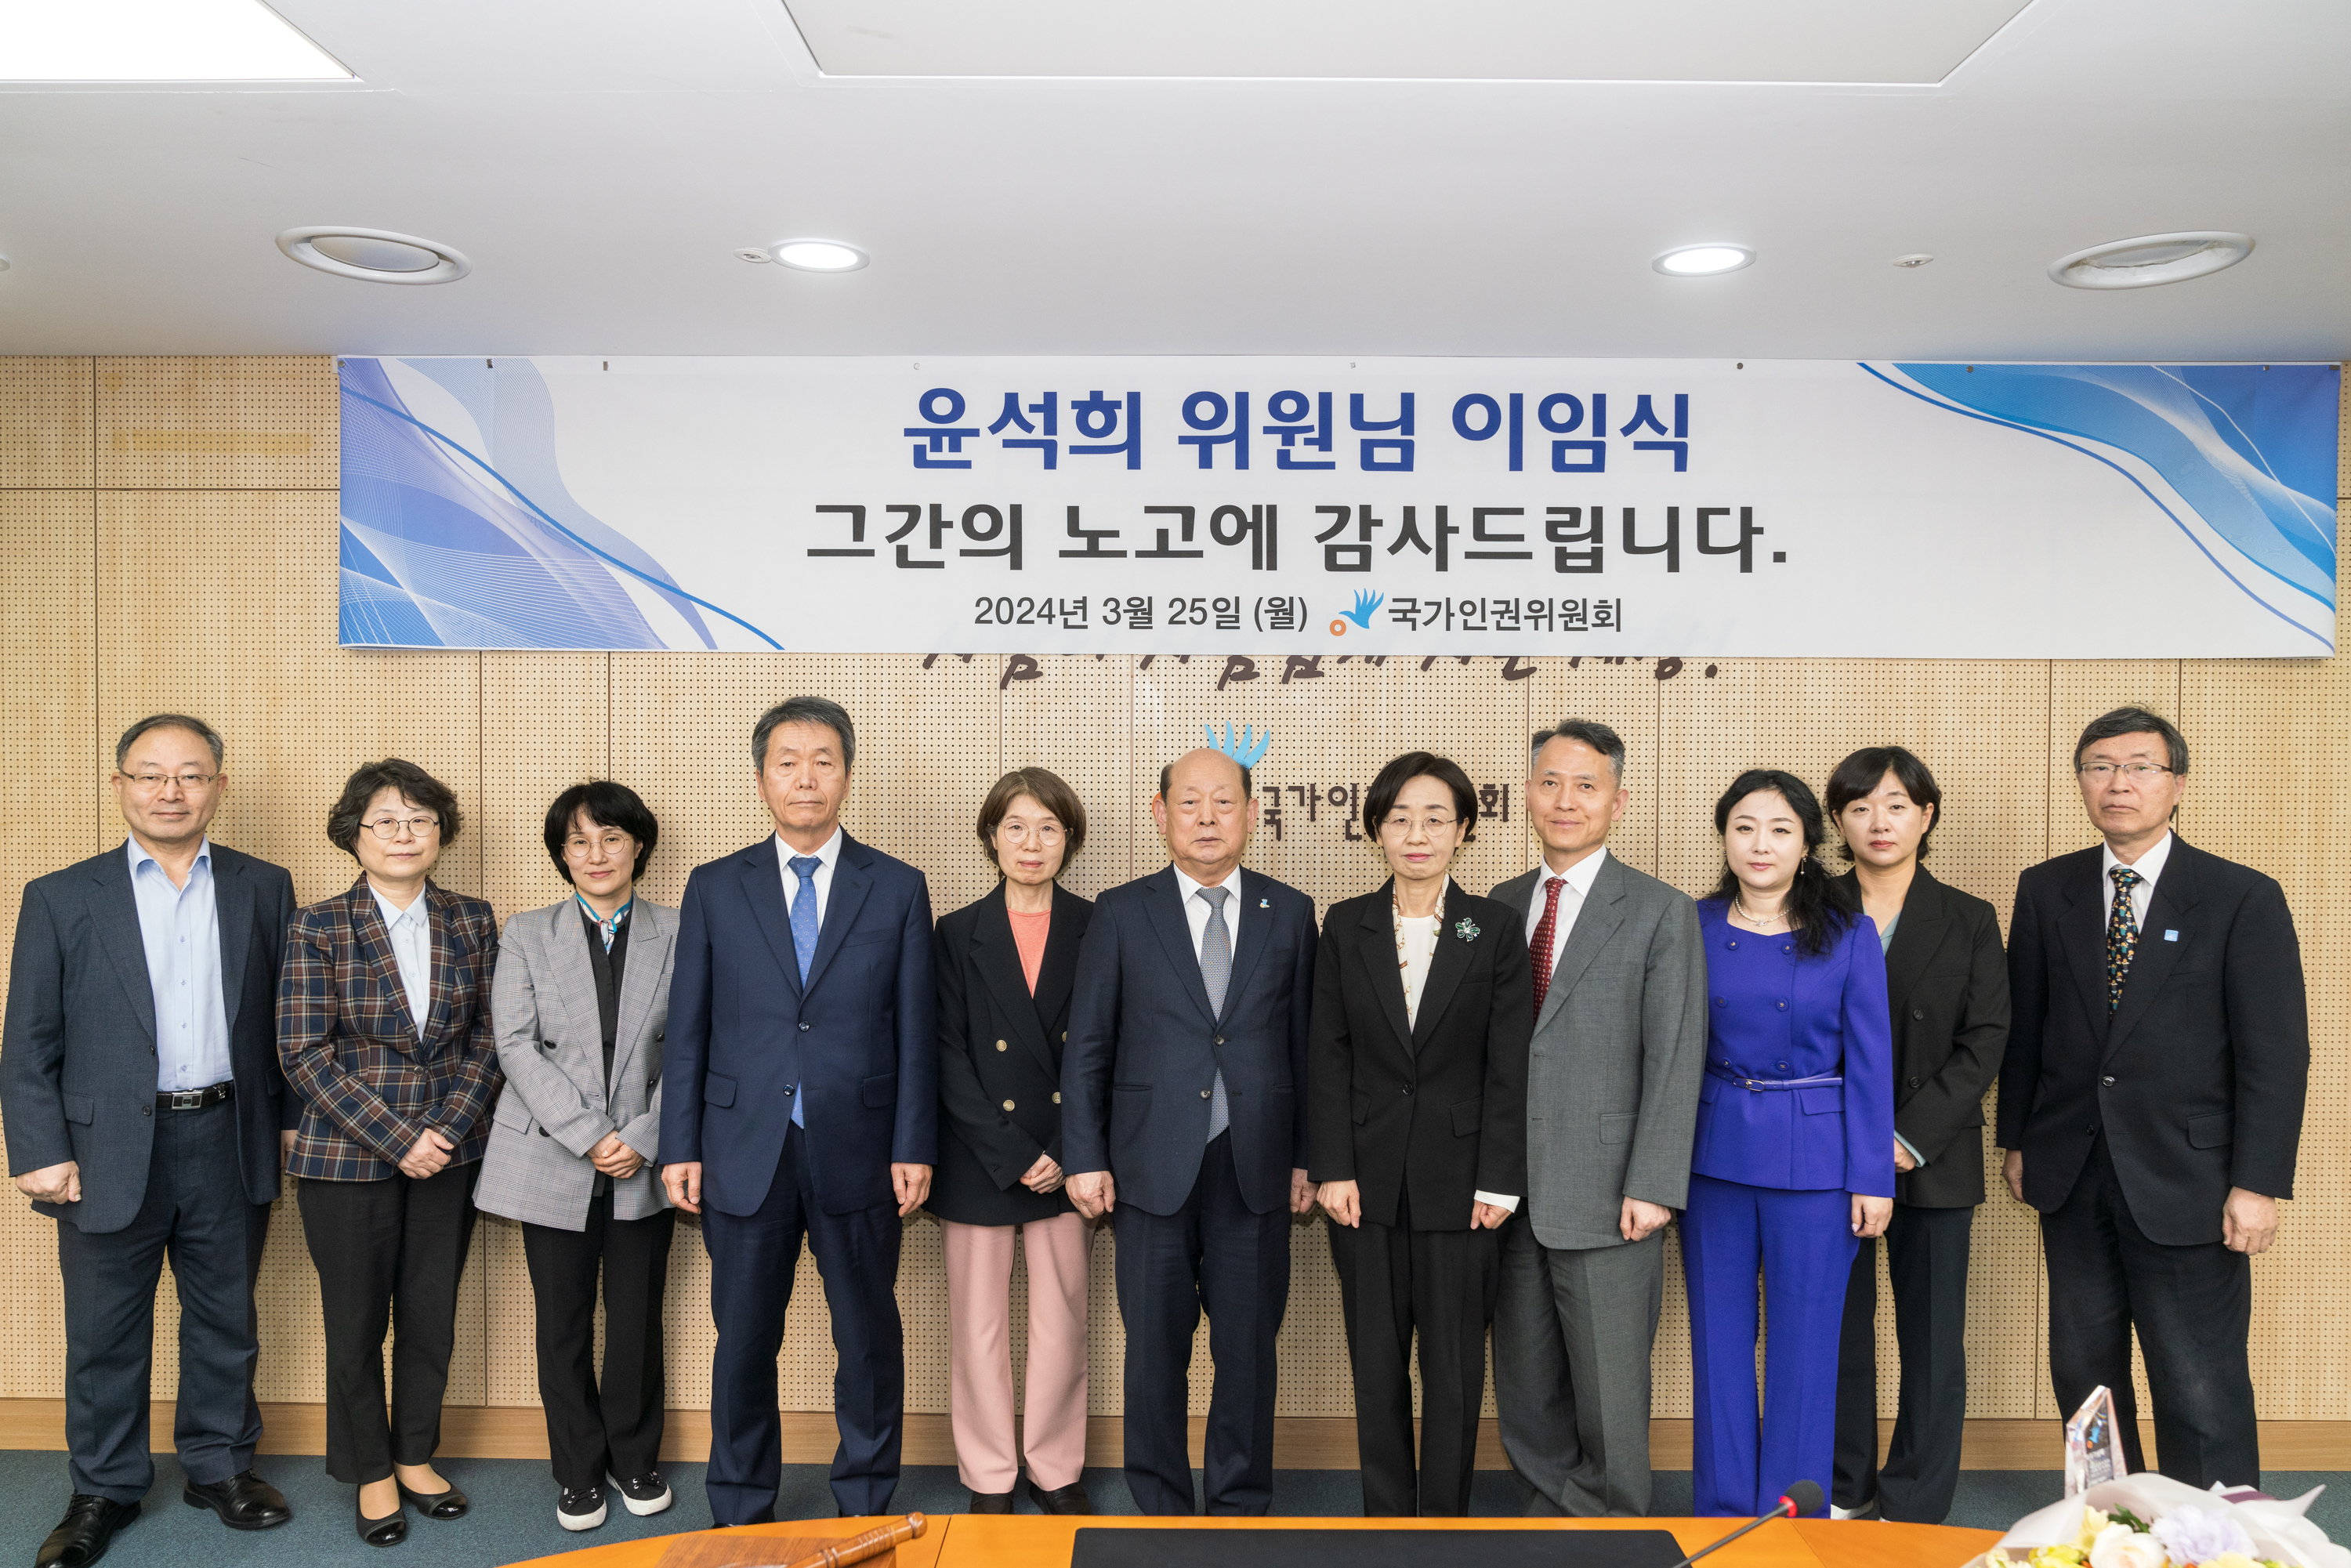 국가인권위원회(위원장 송두환)는 3월 25일 인권위원 이임식 및 임명장 전수식을 개최하였습니다.